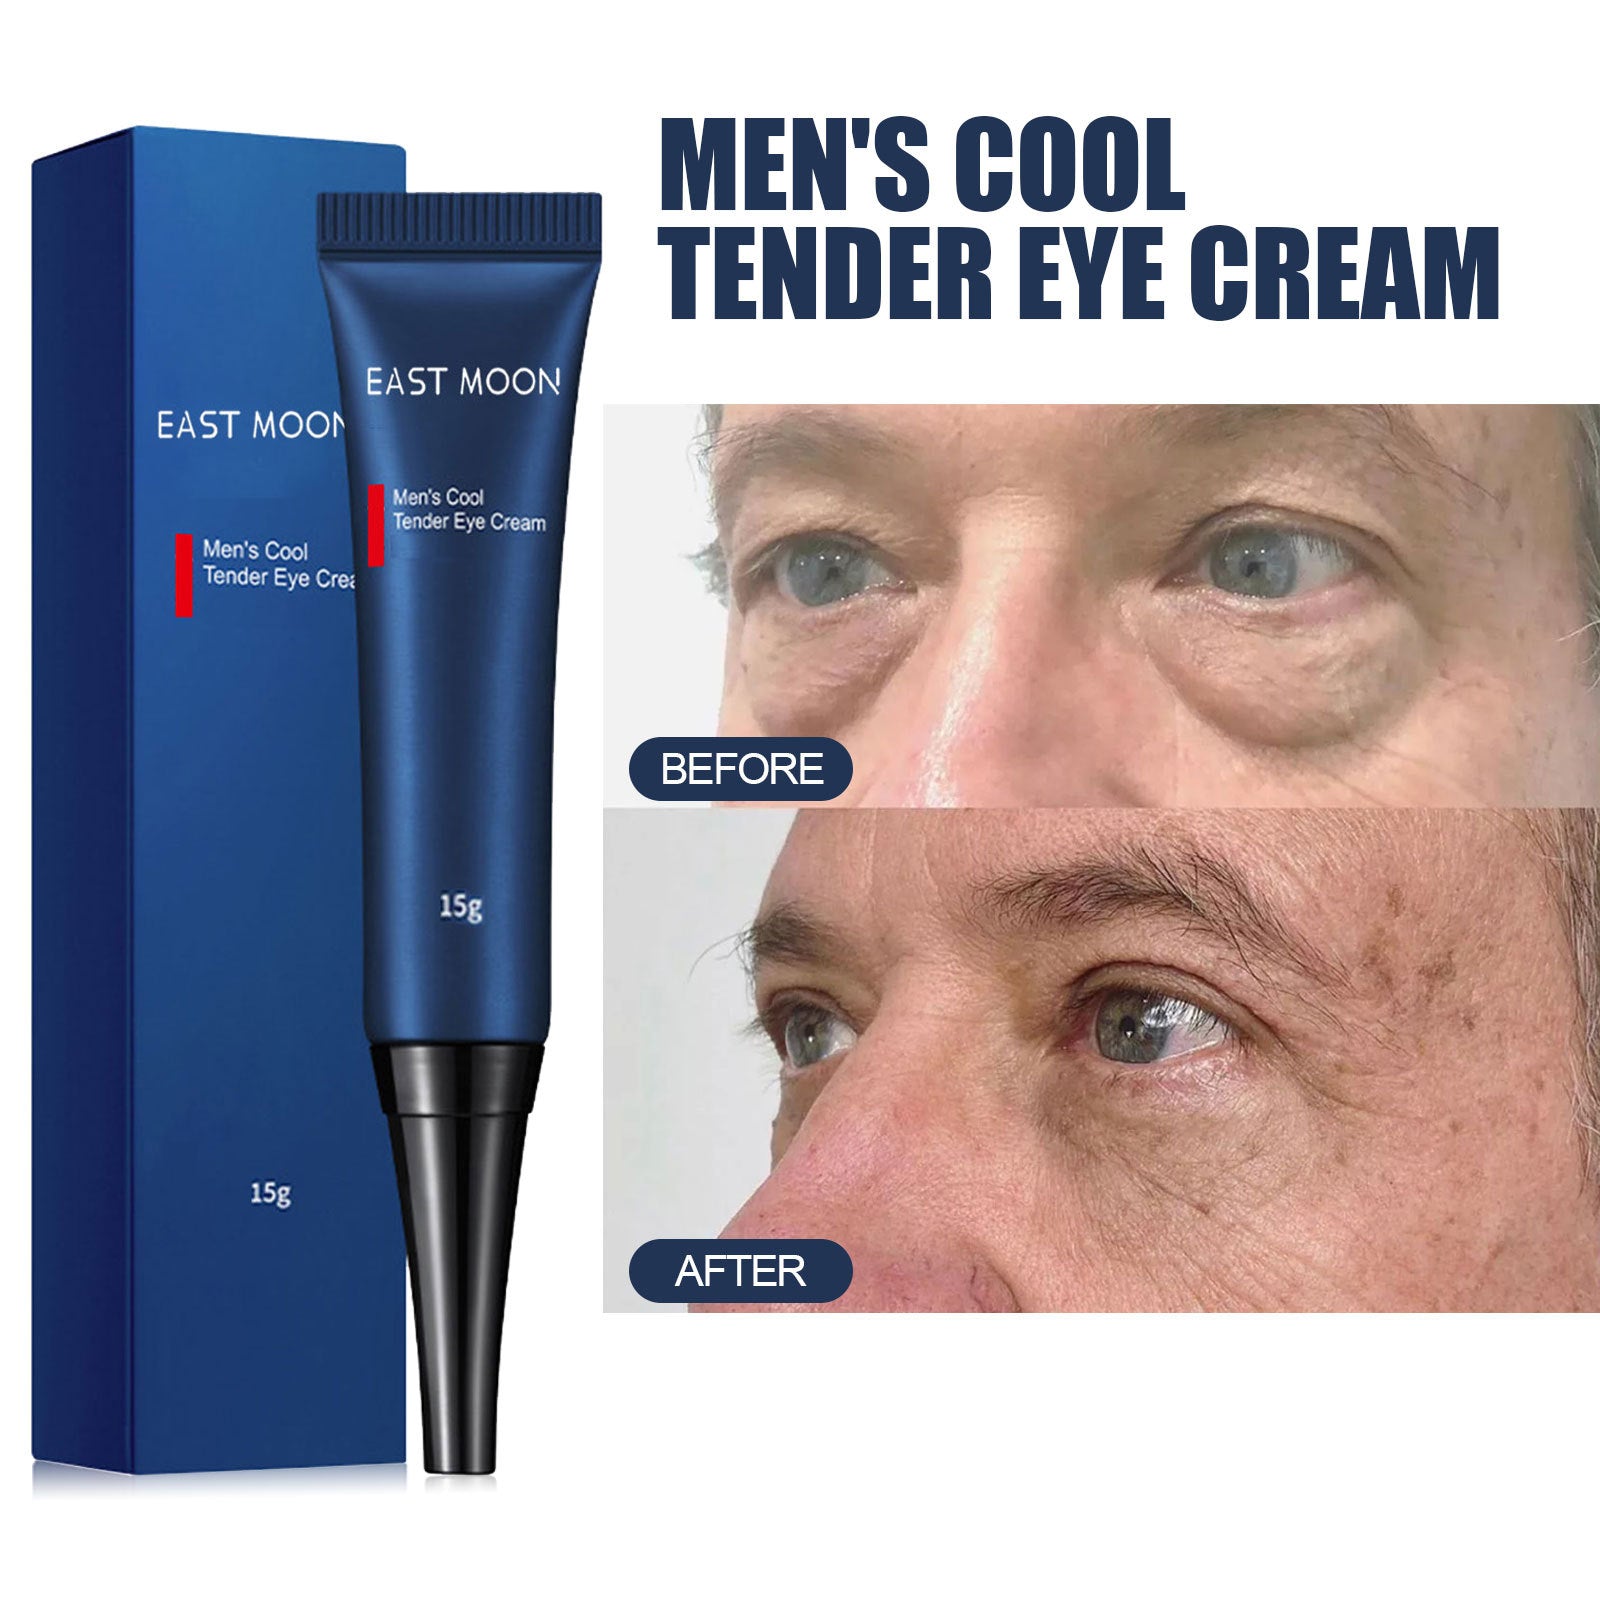 Men's Retinol Firming And Lightening Dark Circles Moisturizing Eye Cream - Classic chic